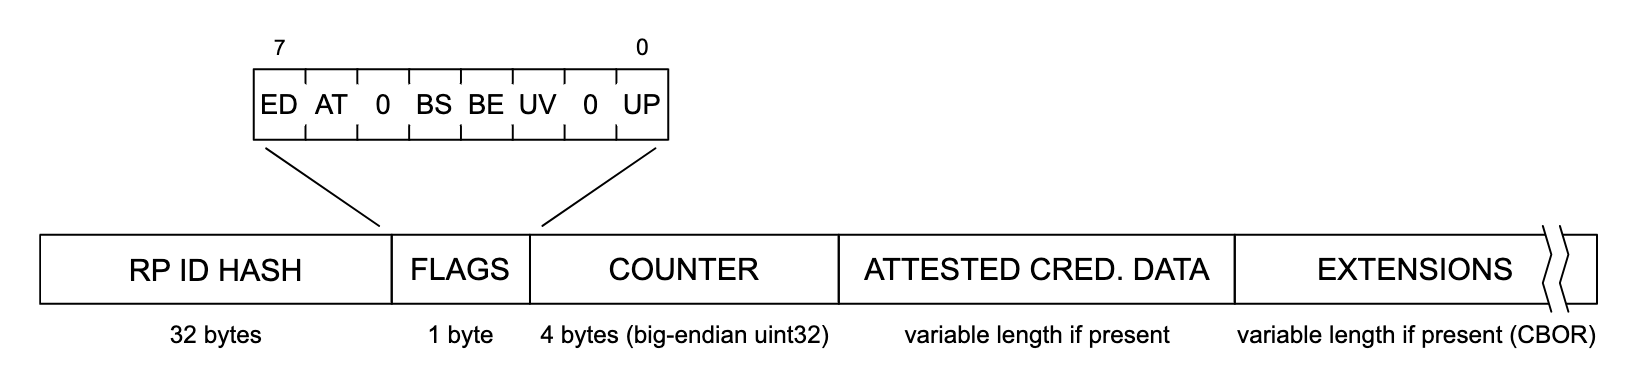 Изображение структуры данных аутентификации. Слева направо каждый раздел структуры данных читается как «RP ID HASH» (32 байта), «FLAGS» (1 байт), «COUNTER» (4 байта, обратный порядок байтов uint32), «ATTESTE CRED». DATA» (переменная длина, если присутствует) и «EXTENSIONS» (переменная длина, если присутствует (CBOR)). Раздел «ФЛАГИ» расширен и содержит список потенциальных флагов, помеченных слева направо: «ED», «AT», «0», «BS», «BE», «UV», «0» и 'ВВЕРХ'.